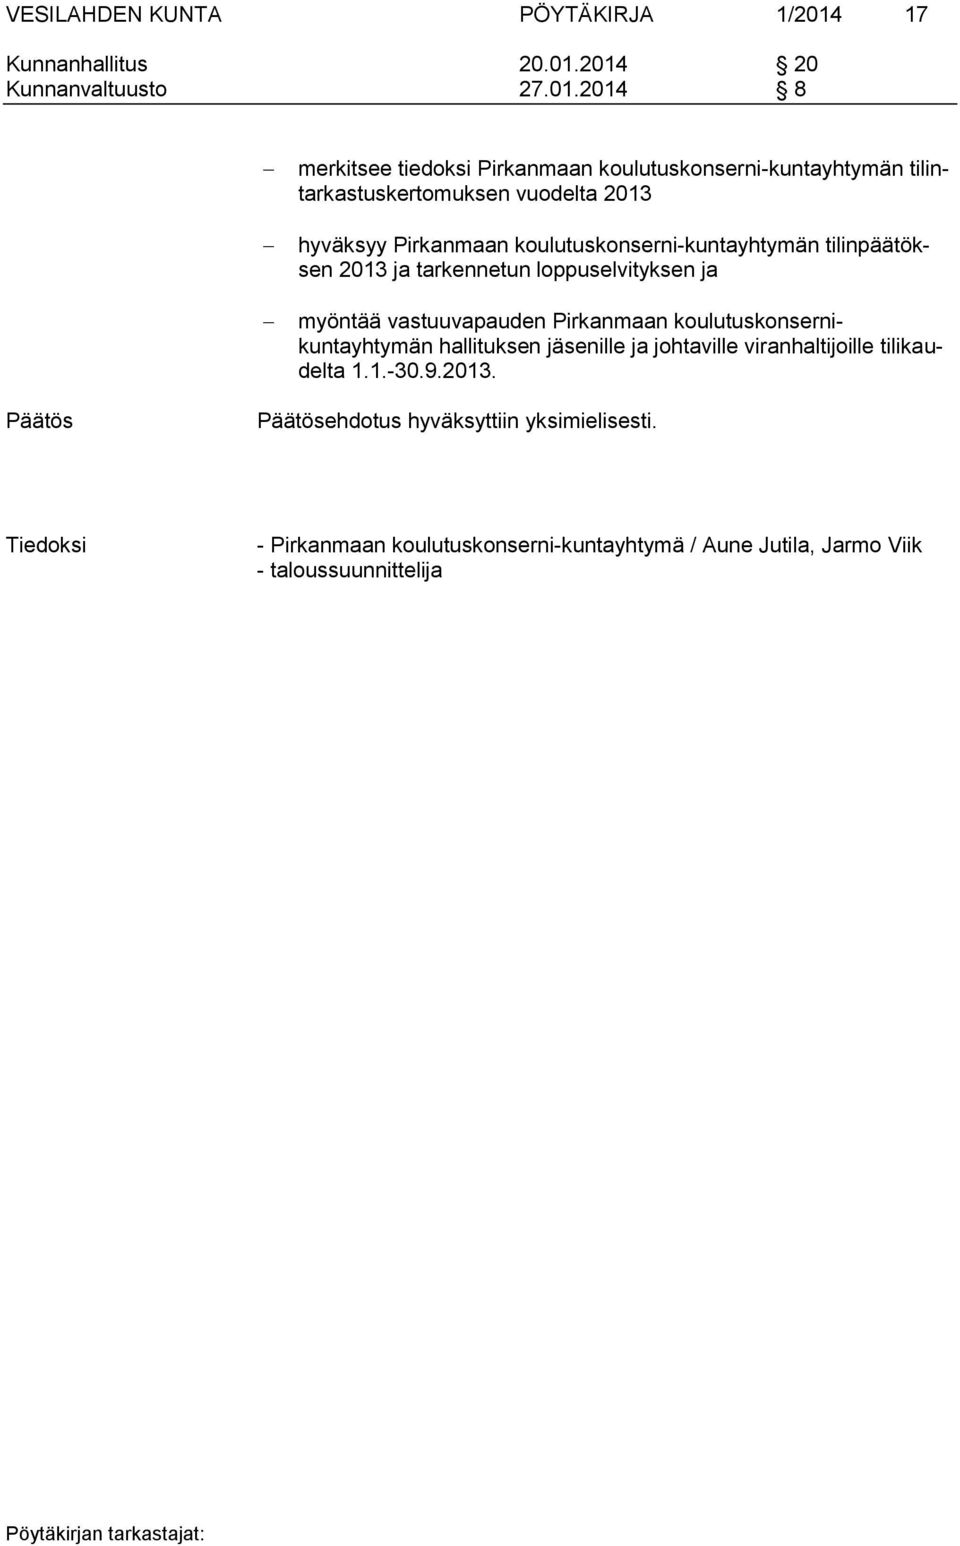 2014 20 Kunnanvaltuusto 27.01.2014 8 merkitsee tiedoksi Pirkanmaan koulutuskonserni-kuntayhtymän tilintarkastuskertomuksen vuodelta 2013